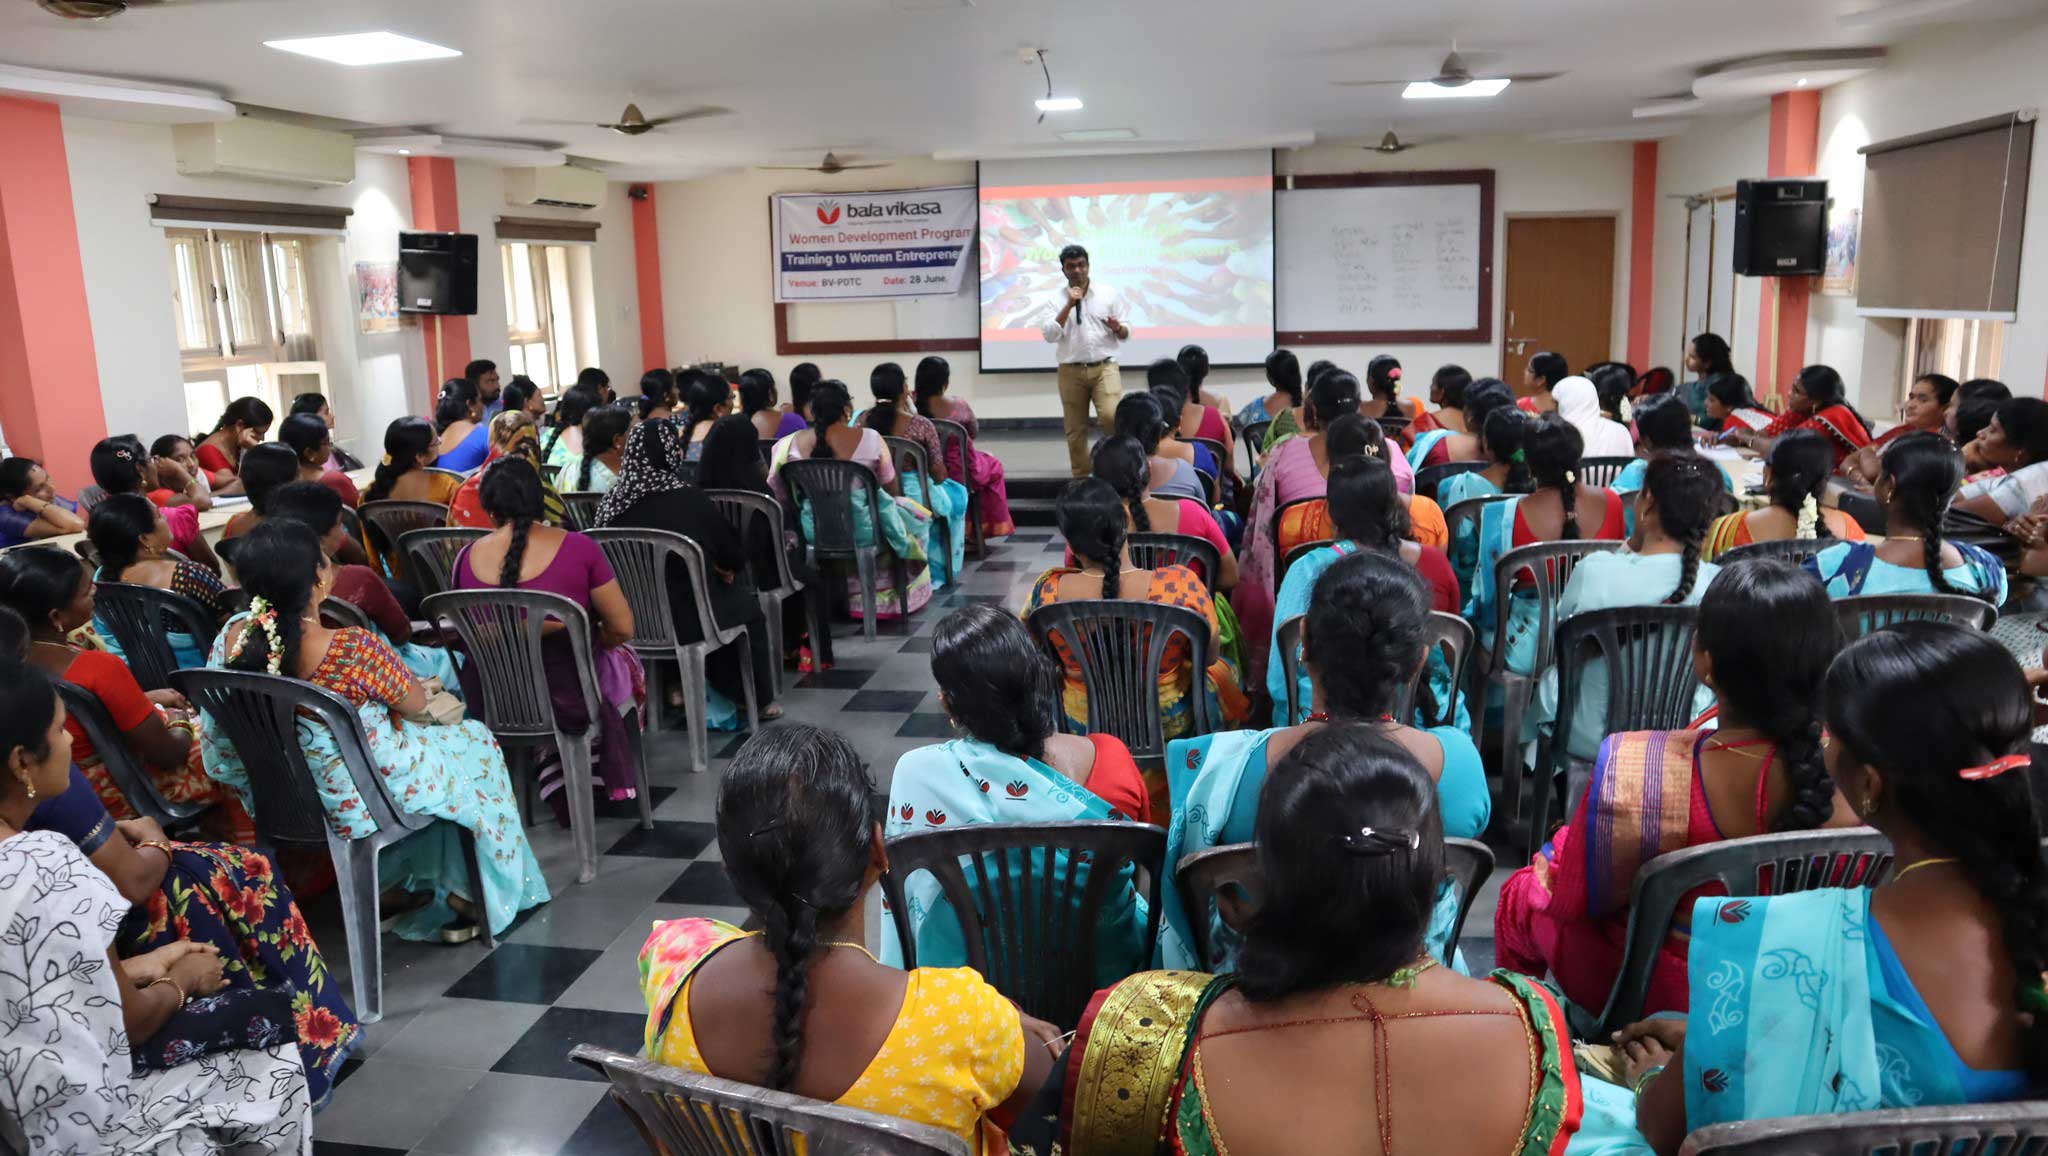 Bala Vikasa Initiates a Series of Workshops on Entrepreneurship for Rural Entrepreneurs